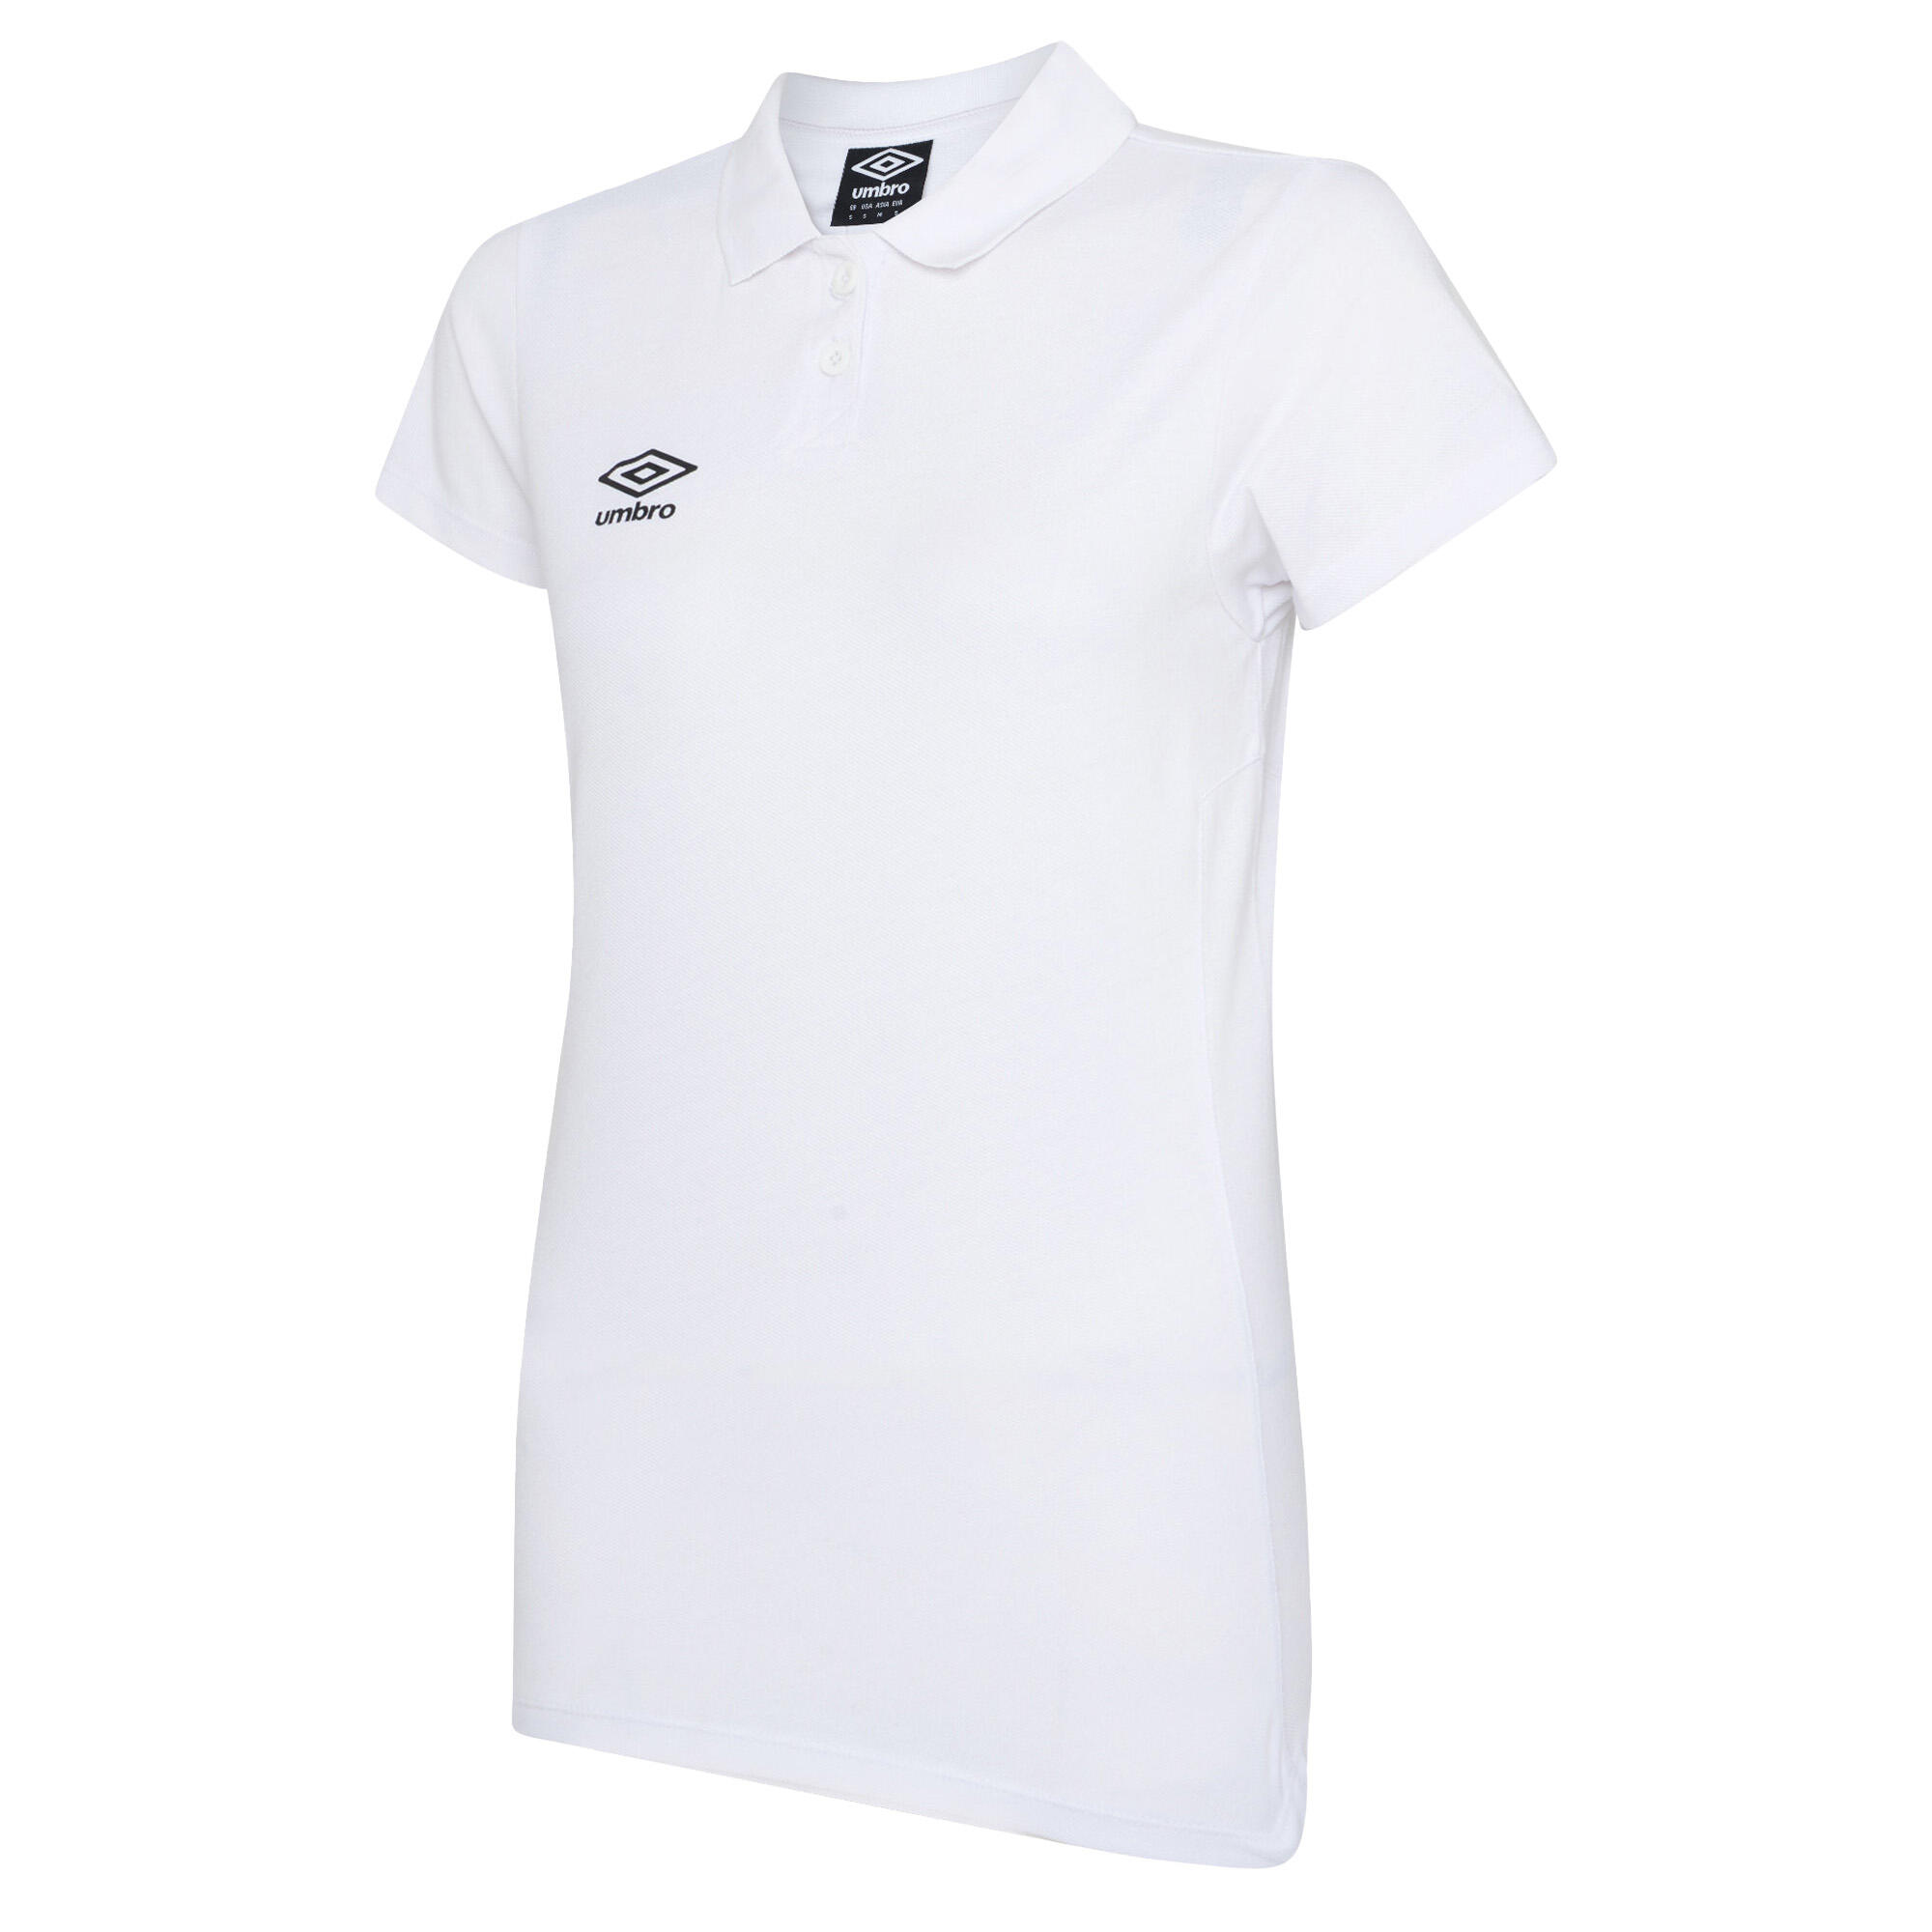 UMBRO Womens/Ladies Club Essential Polo Shirt (White/Black)